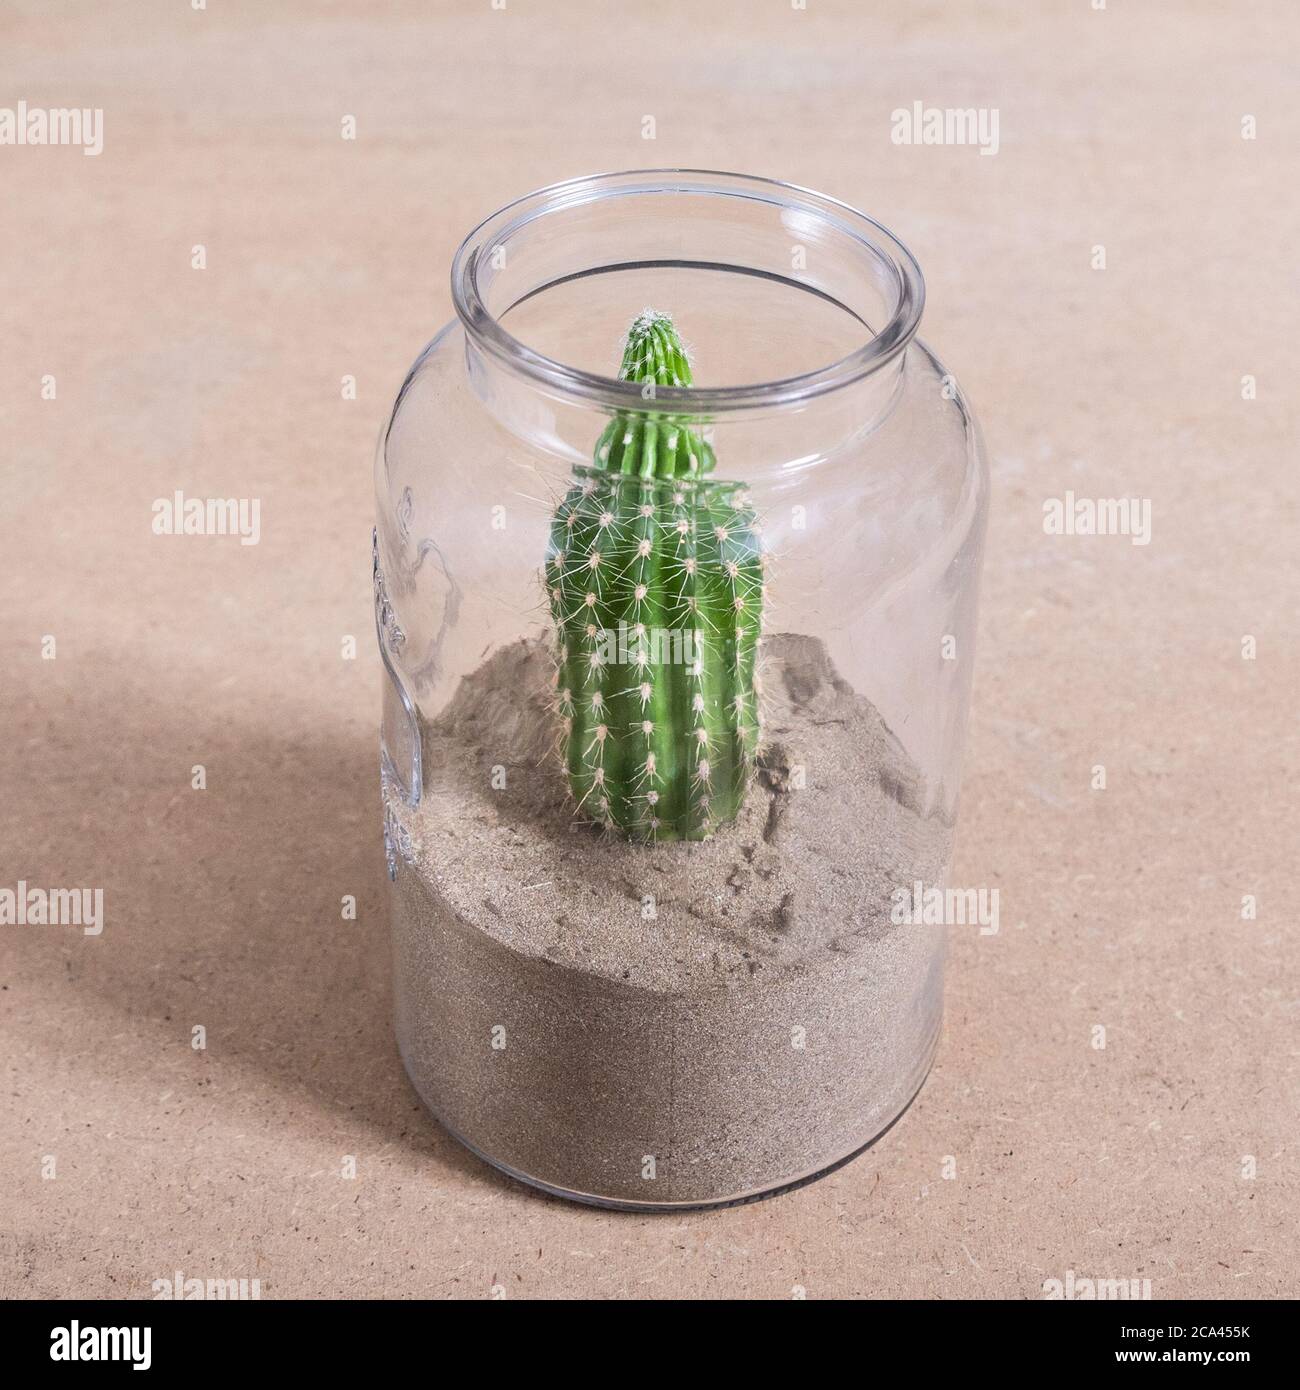 Armatocereus godingianus with cactus in the glass jar Stock Photo